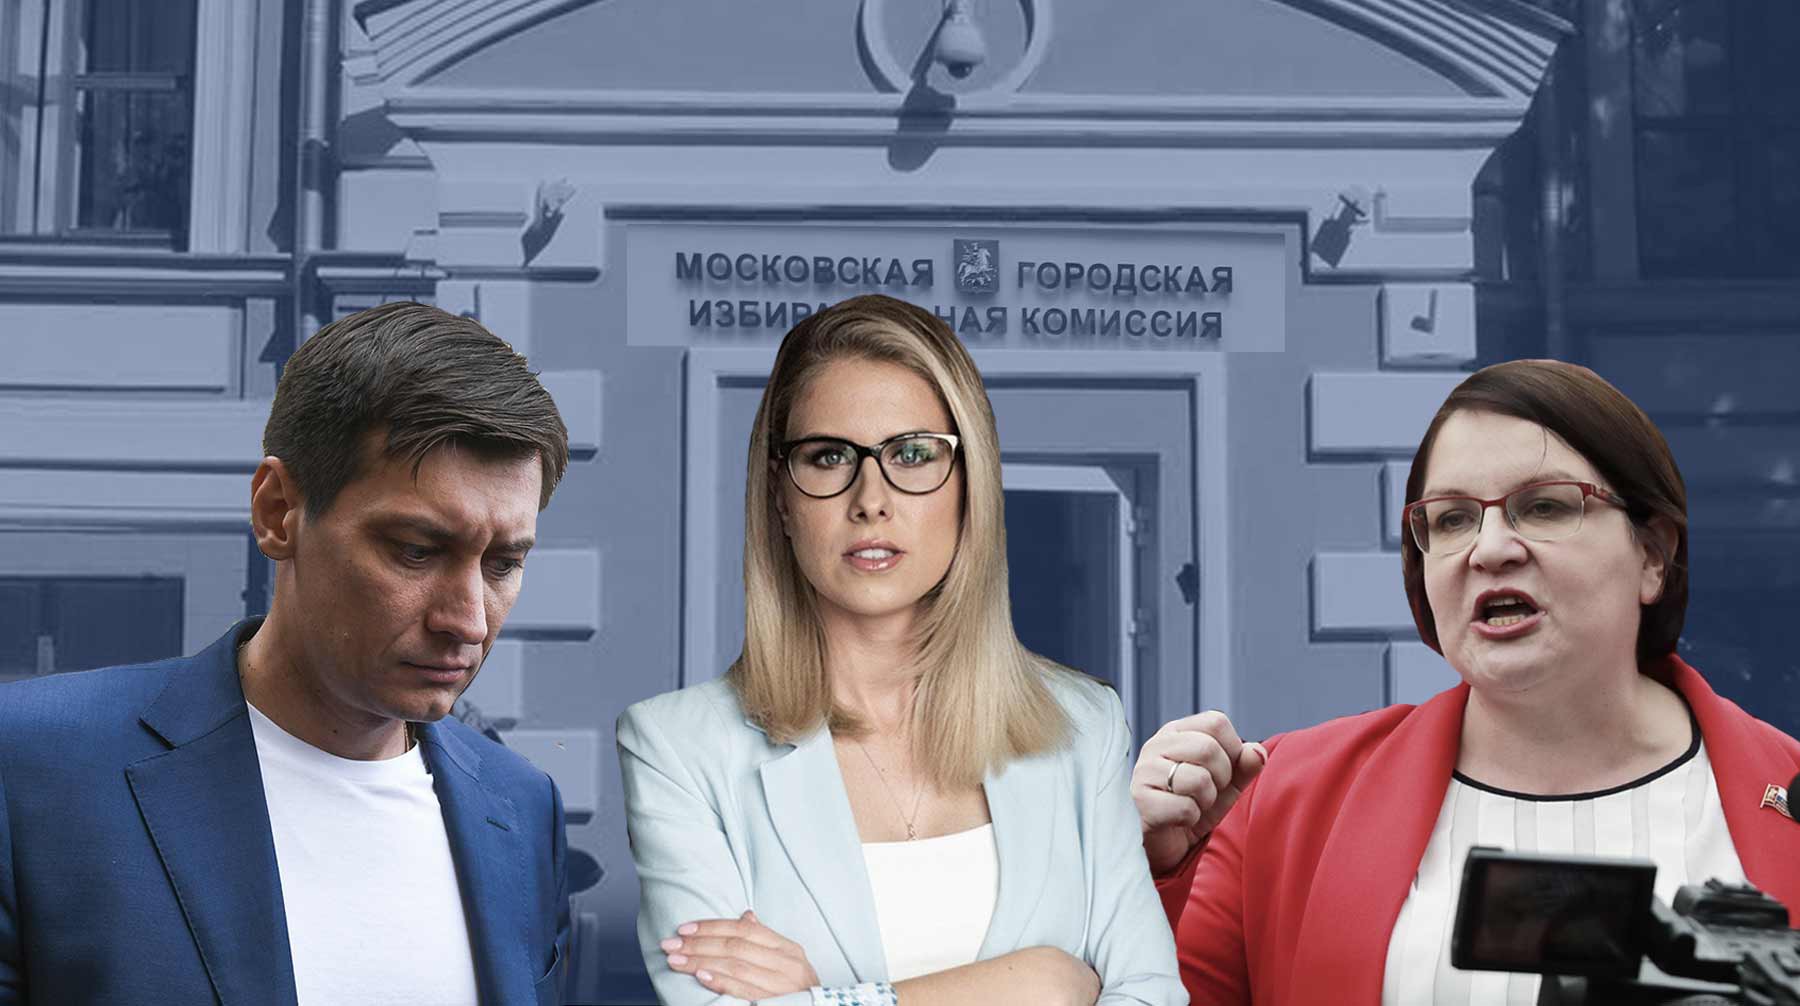 Dailystorm - «Разгон будет обязательно». Незарегистрированные кандидаты в Мосгордуму готовы идти на столкновение с властью